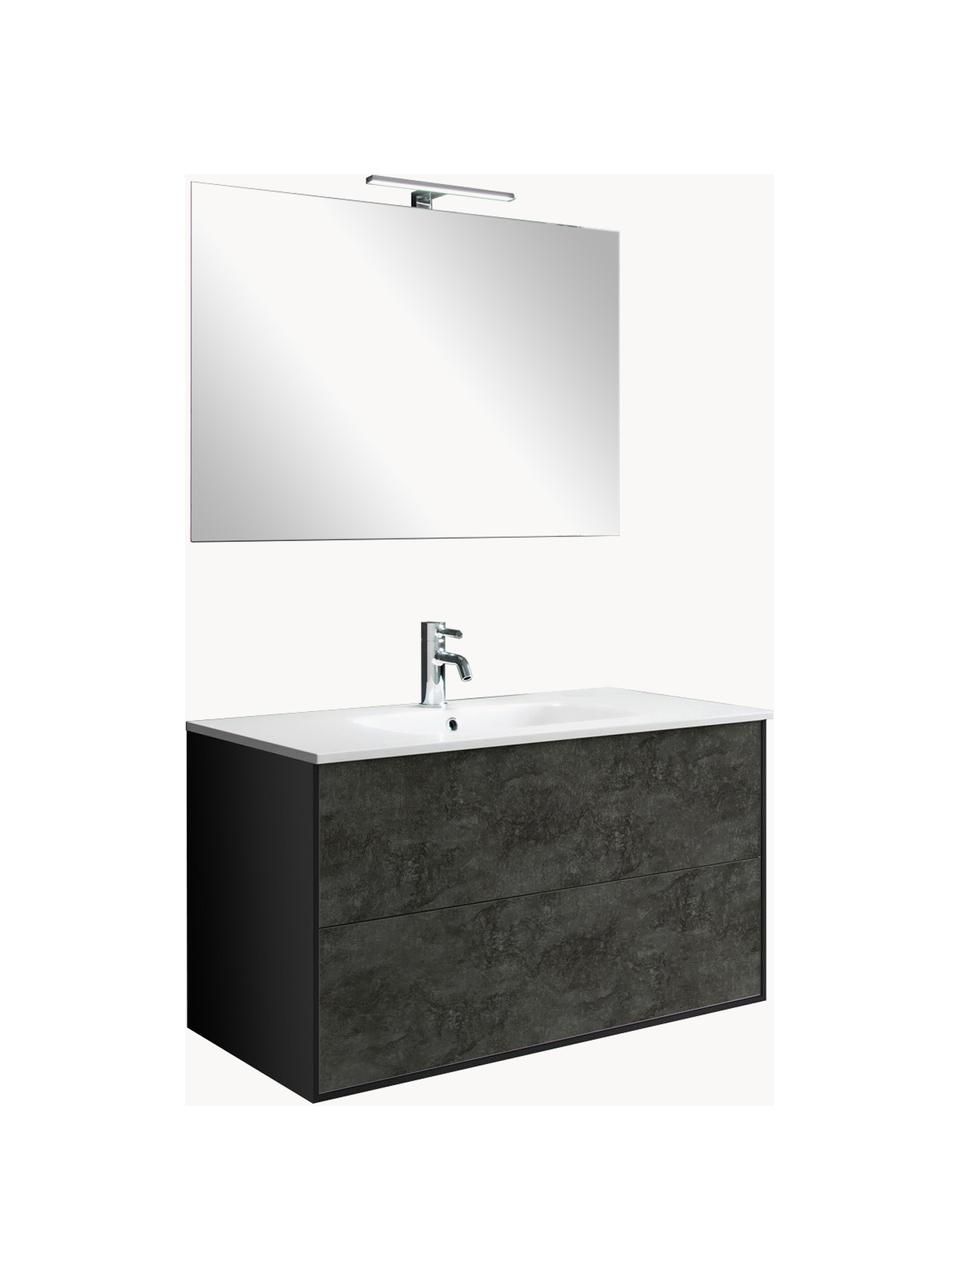 Waschtisch-Set Ago, 4-tlg., Spiegelfläche: Spiegelglas, Rückseite: ABS-Kunststoff, Schwarz, Anthrazit, B 61 x H 190 cm